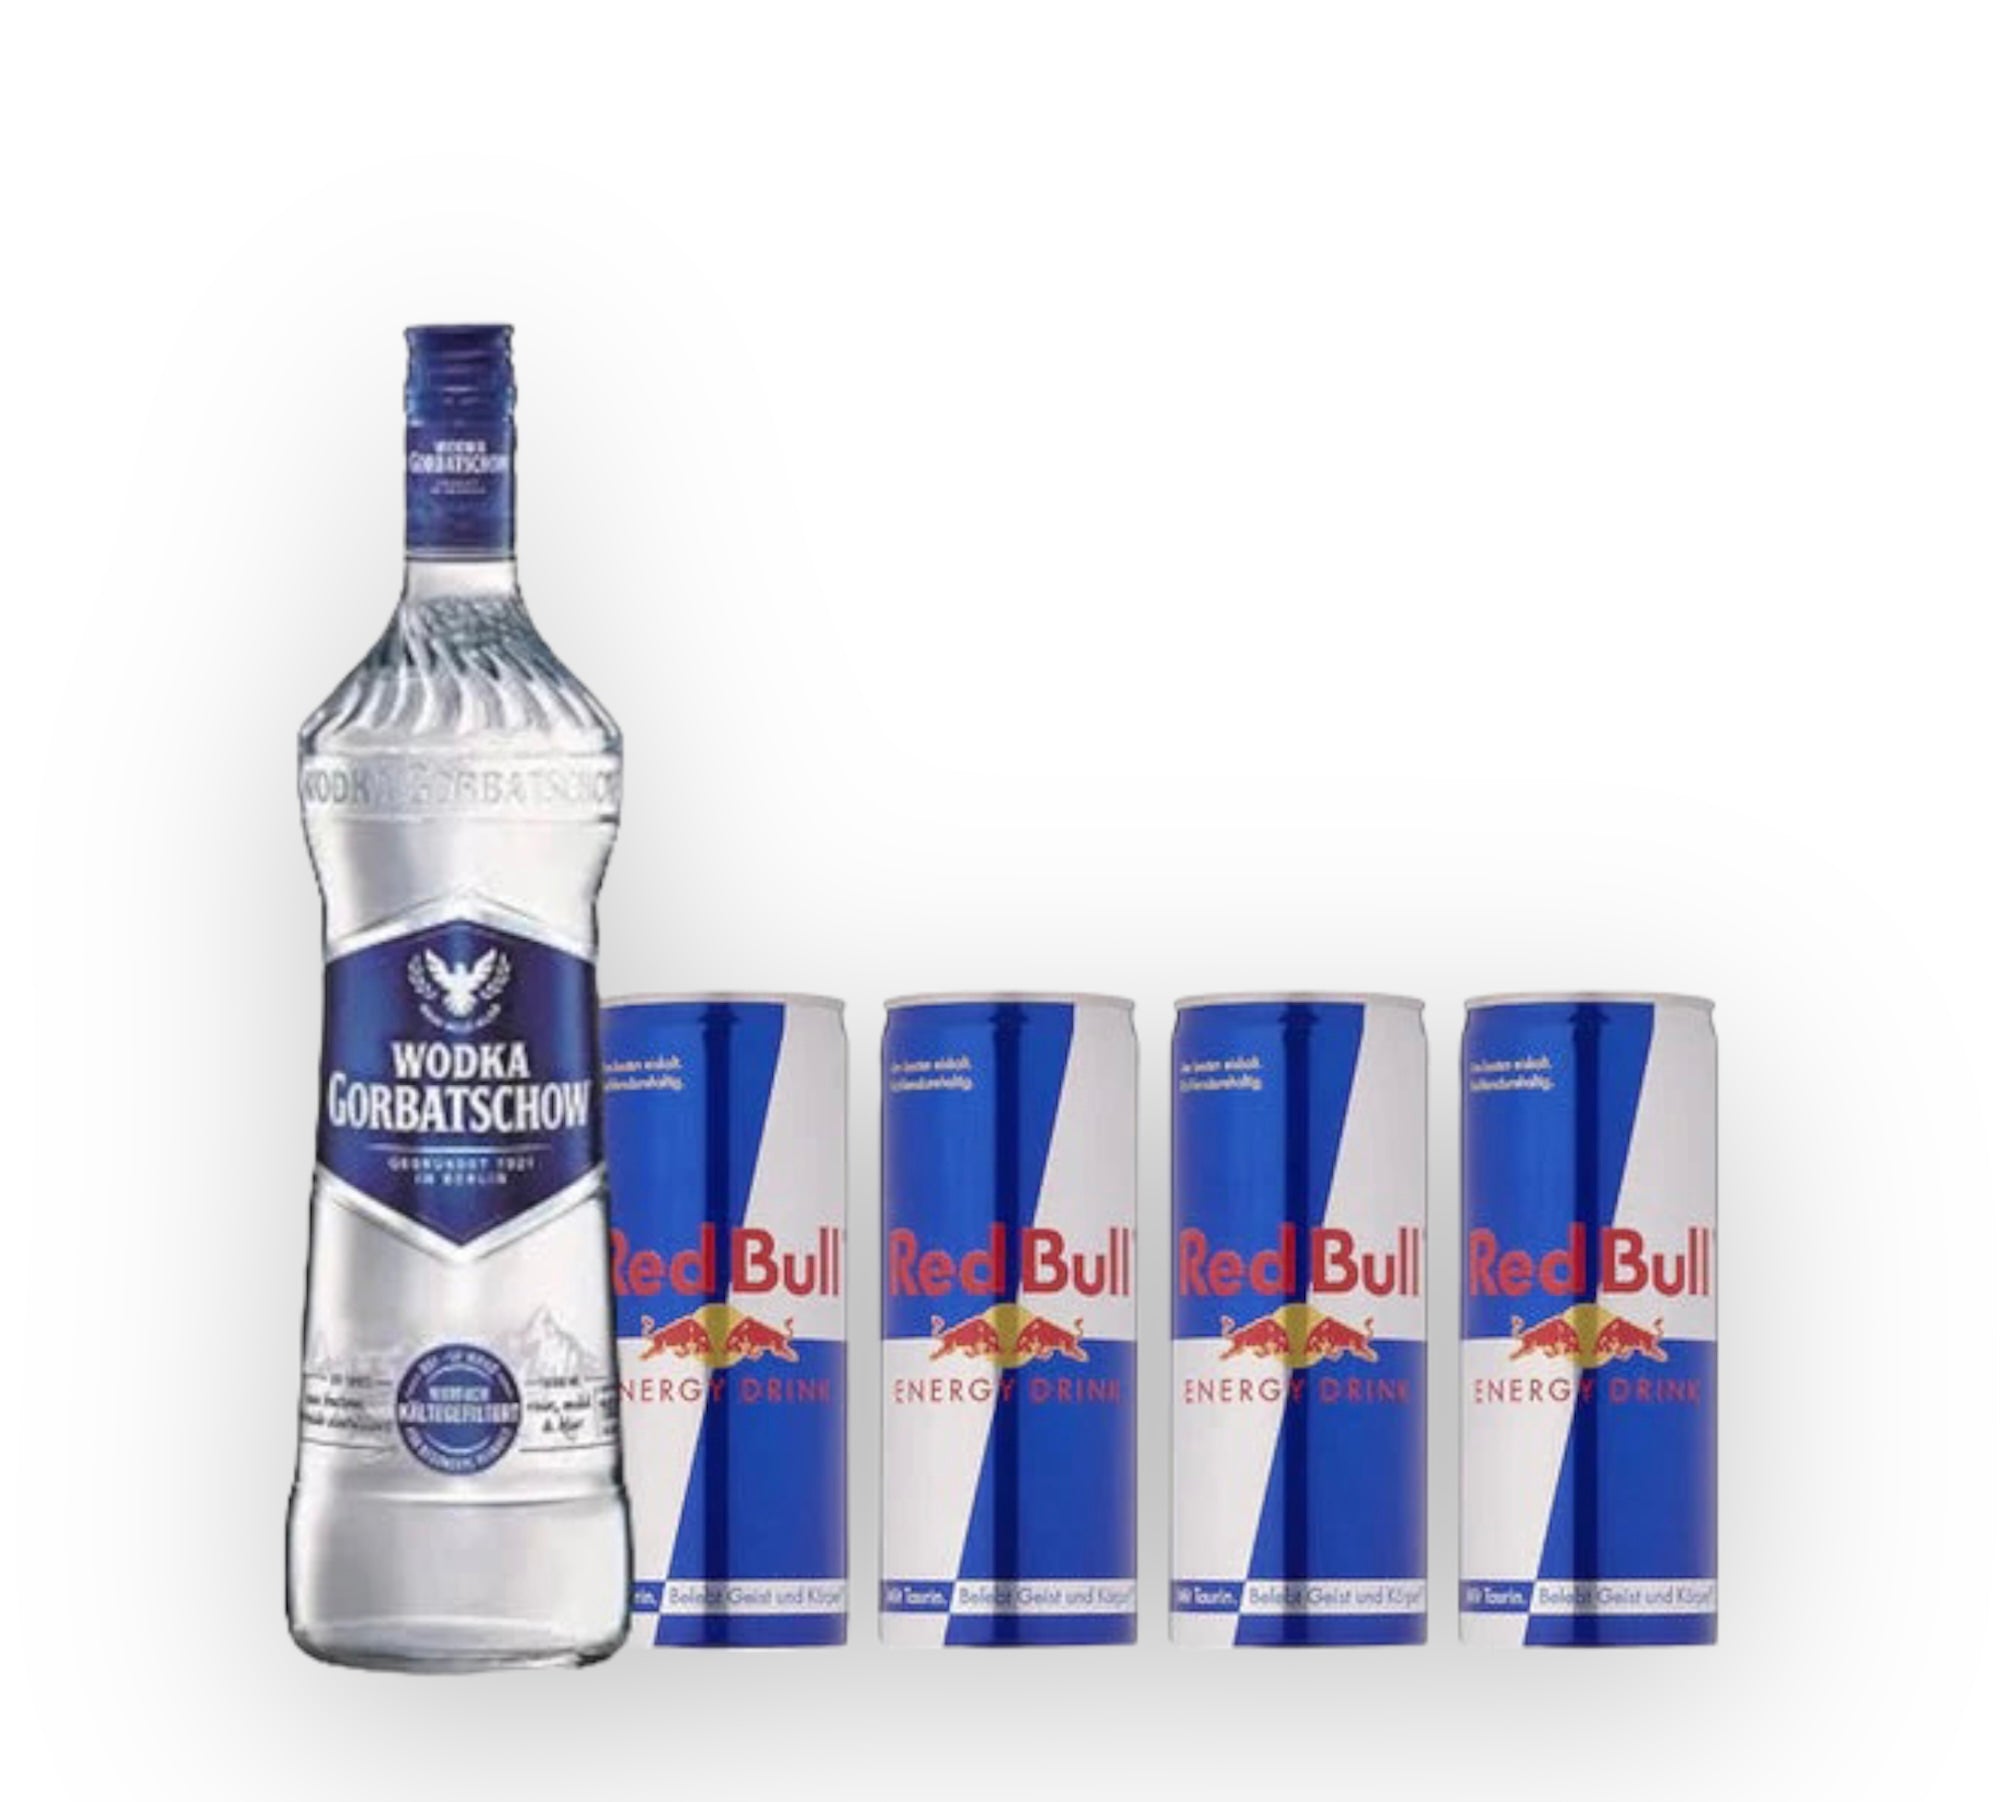 Wodka Gorbatschow 0,7l + 4x Red Bull